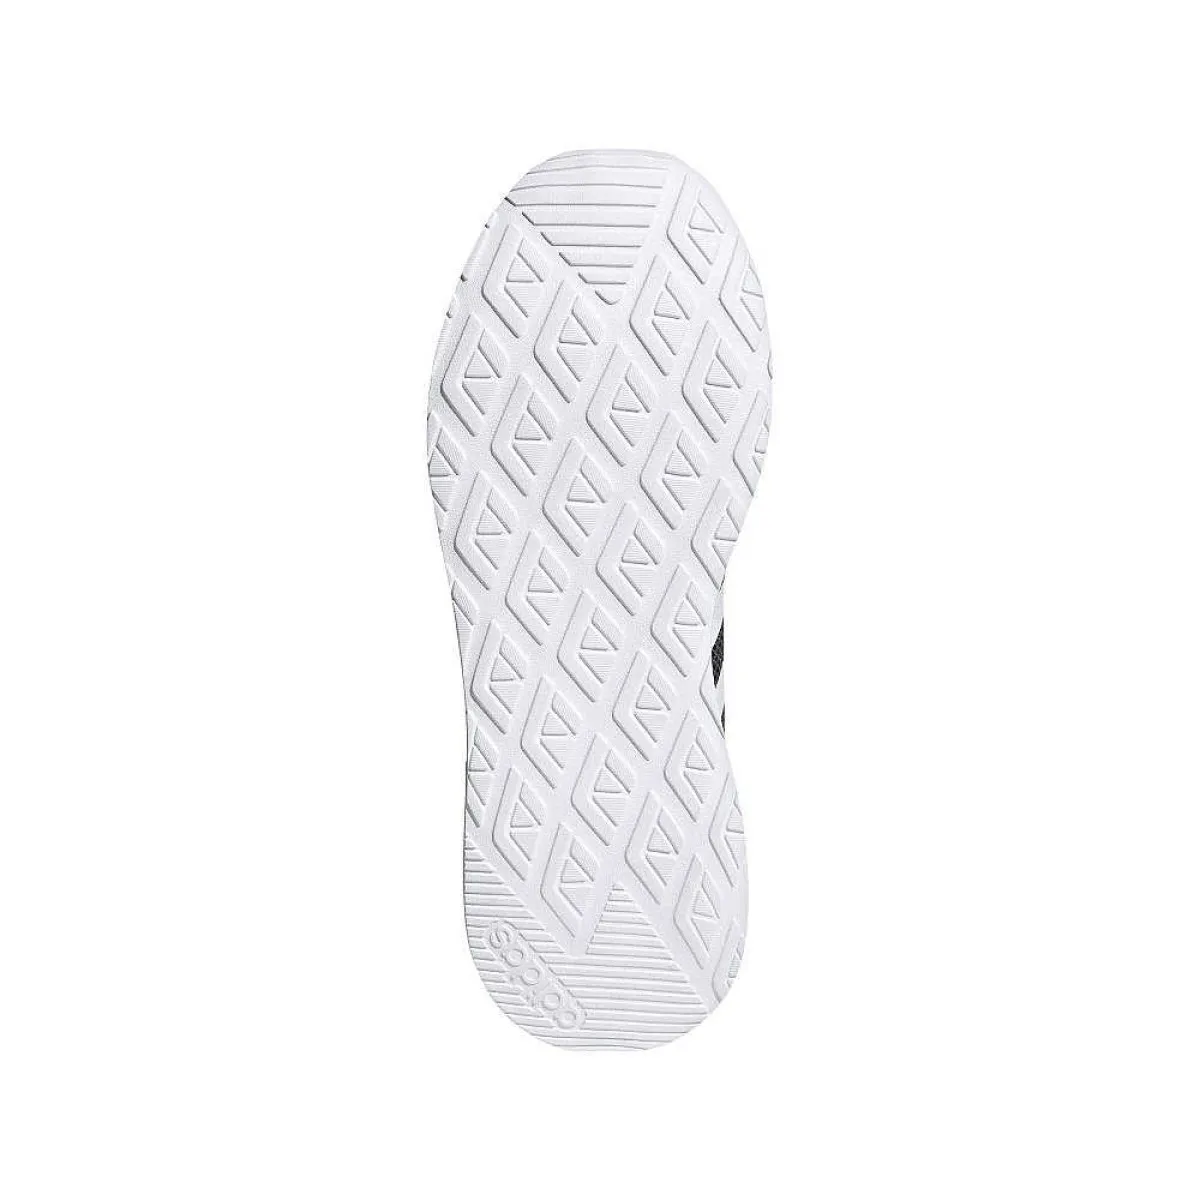 Zapatillas deportivas adidas Questar Flow negras con rayas blancas